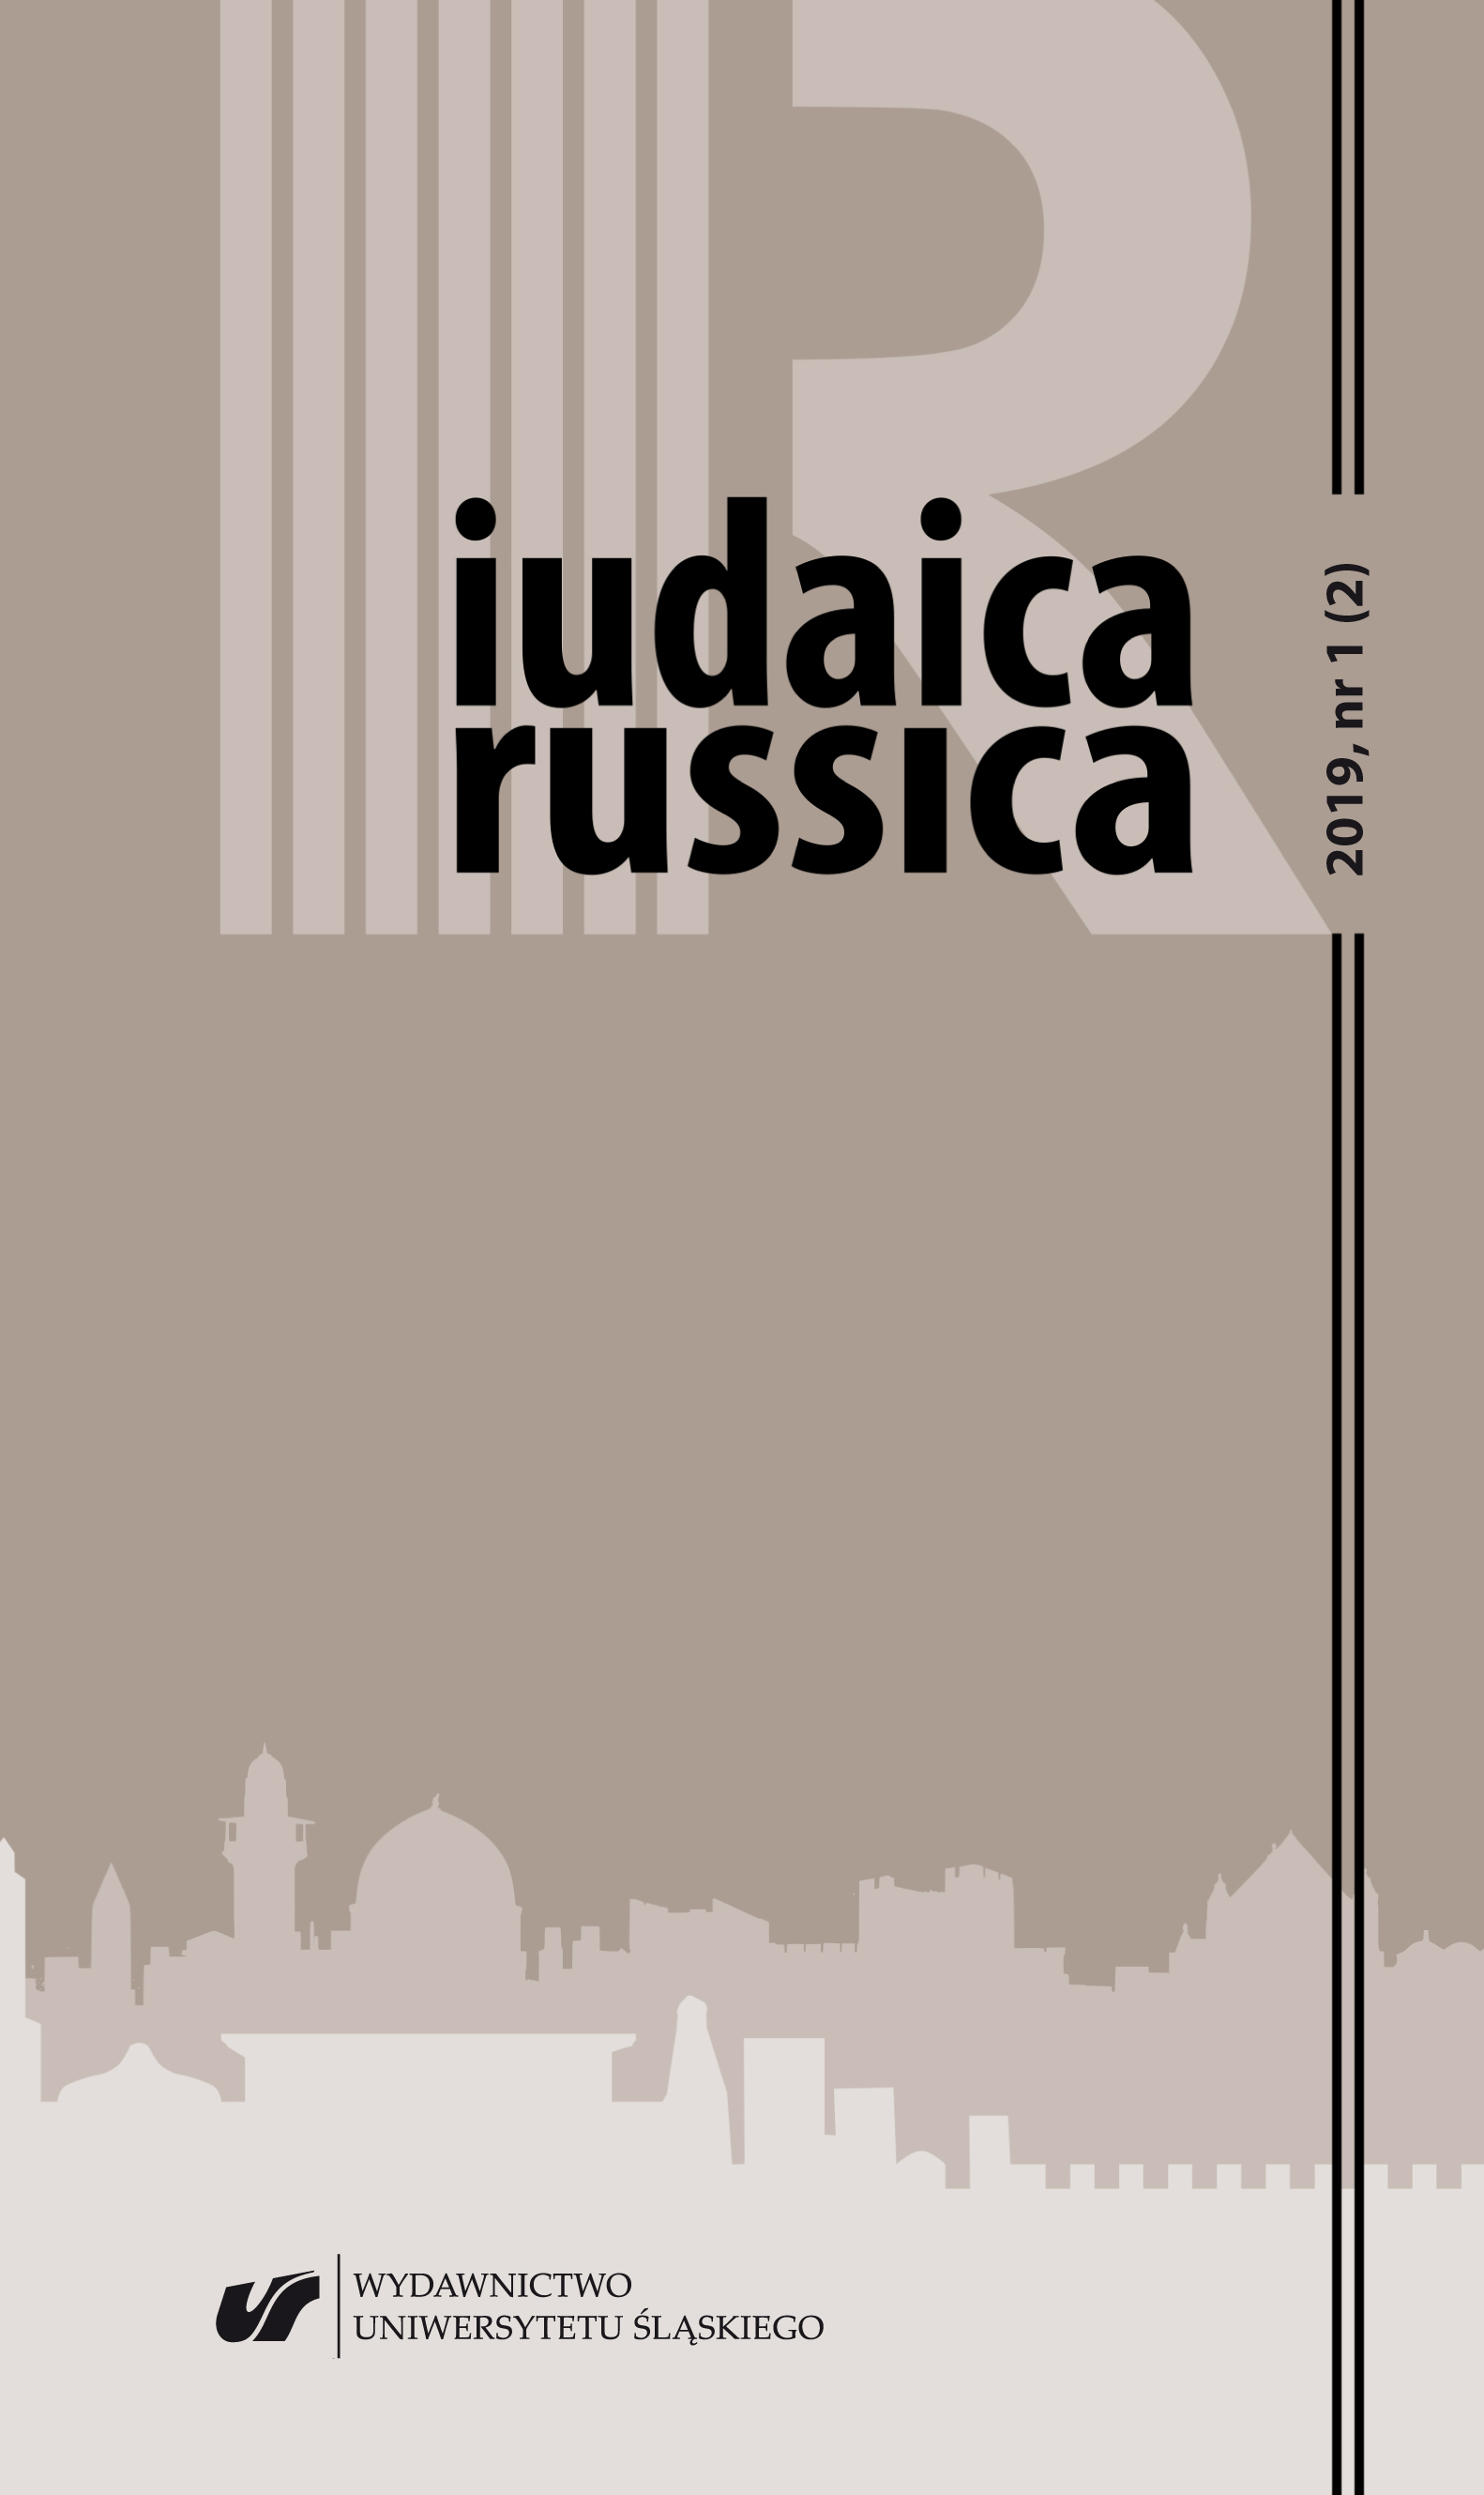 Modlitewniki żydowskie w języku rosyjskim w XIX wieku — rekonesans badawczy (na podstawie kwerendy w Bibliotece Narodowej w Warszawie)